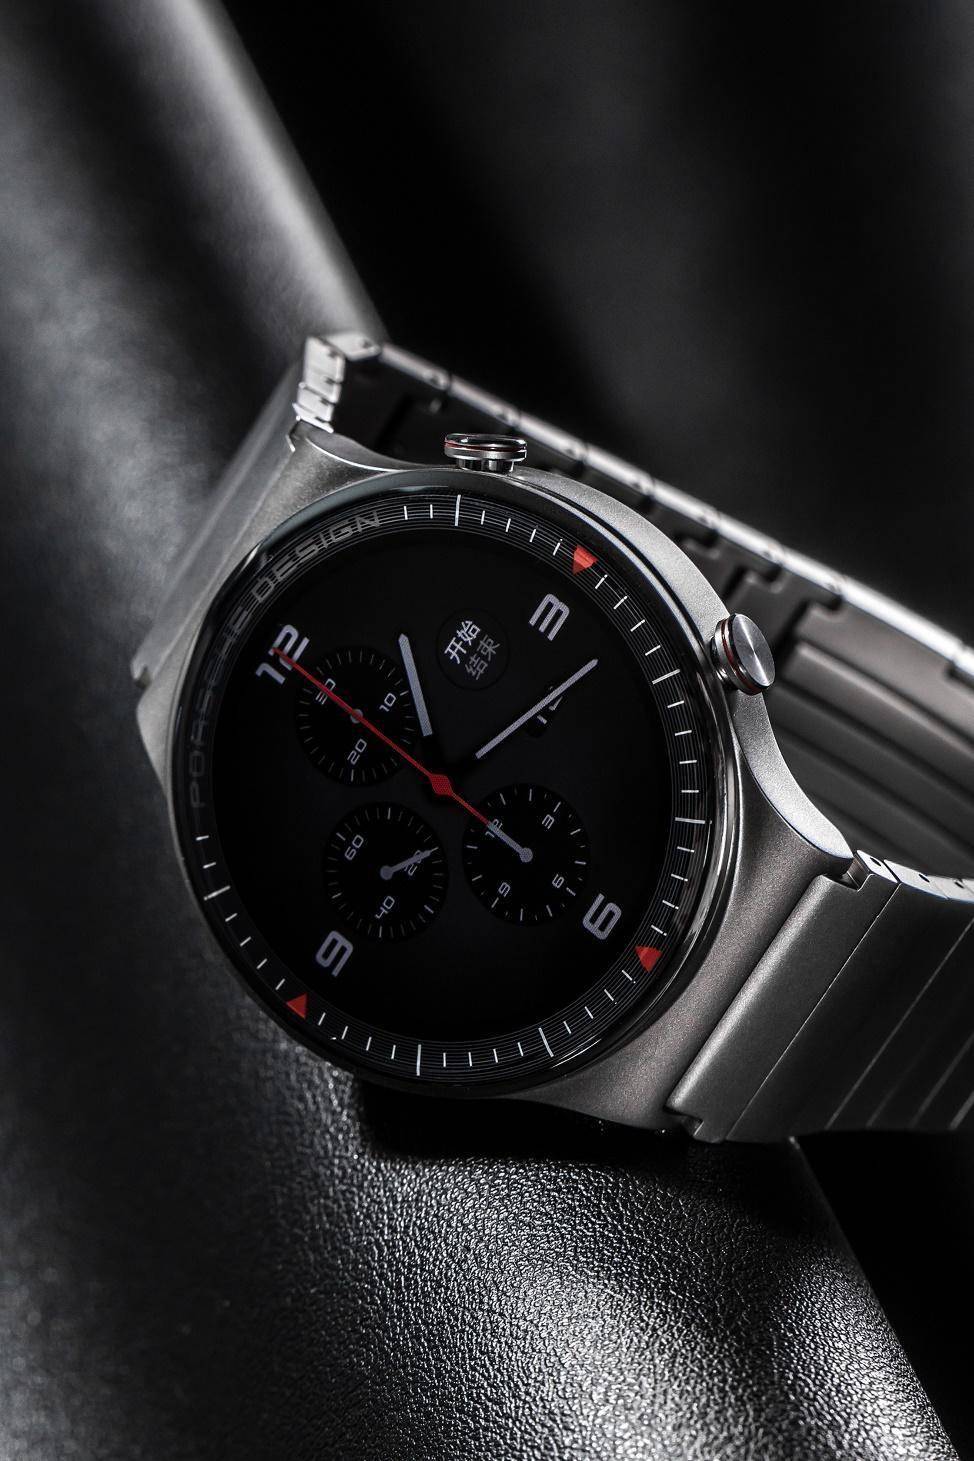 奢华级智能手表体验,华为watch gt2保时捷设计款图赏_材质